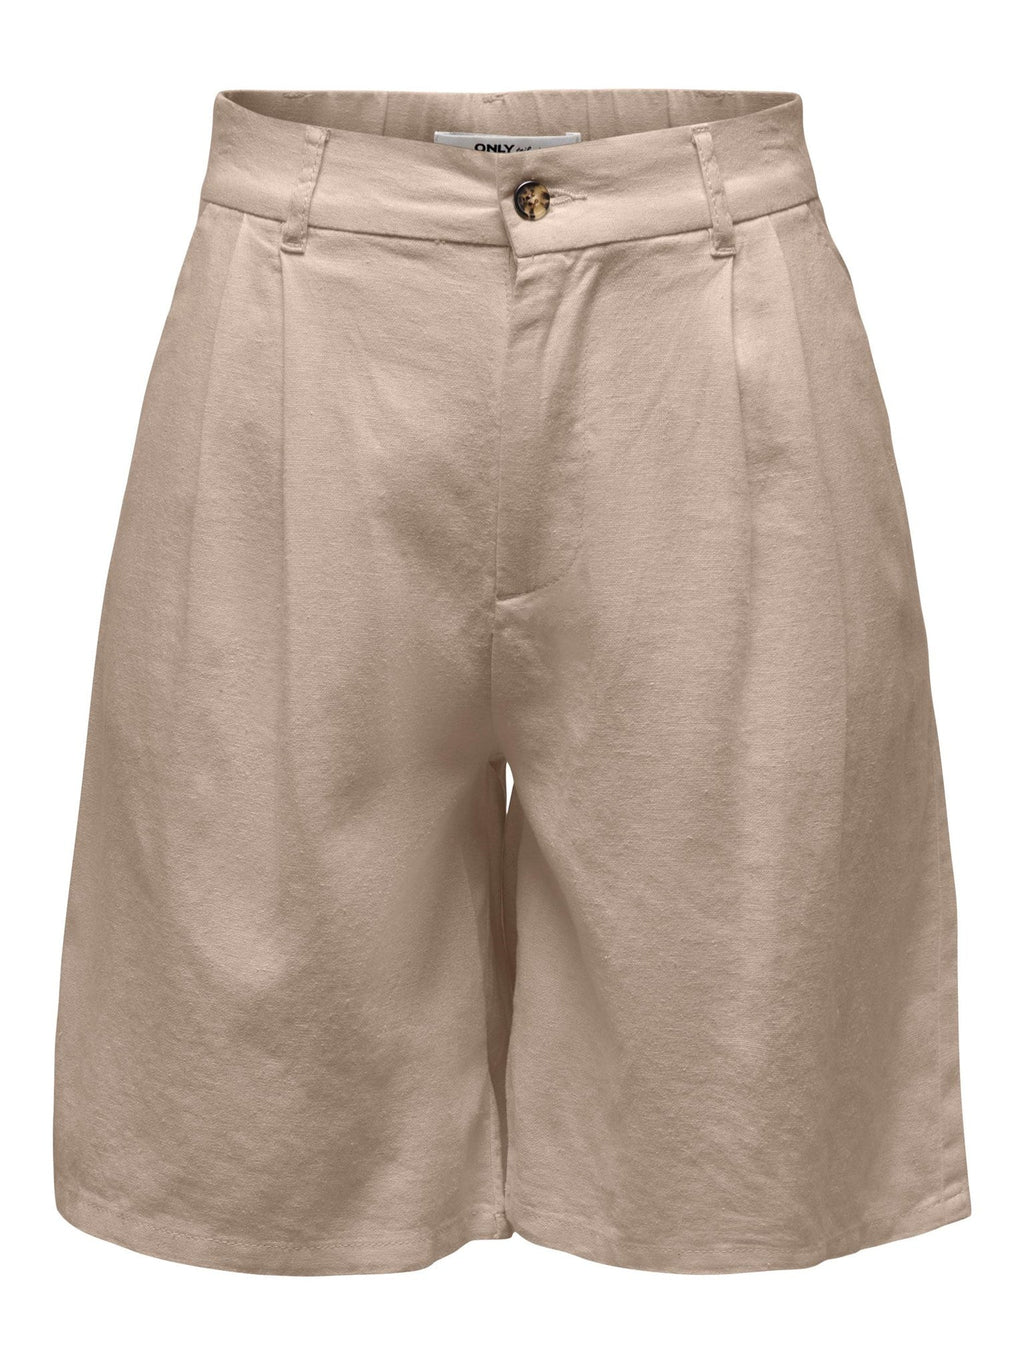 Shorts de taille caro high - Oxford Tan